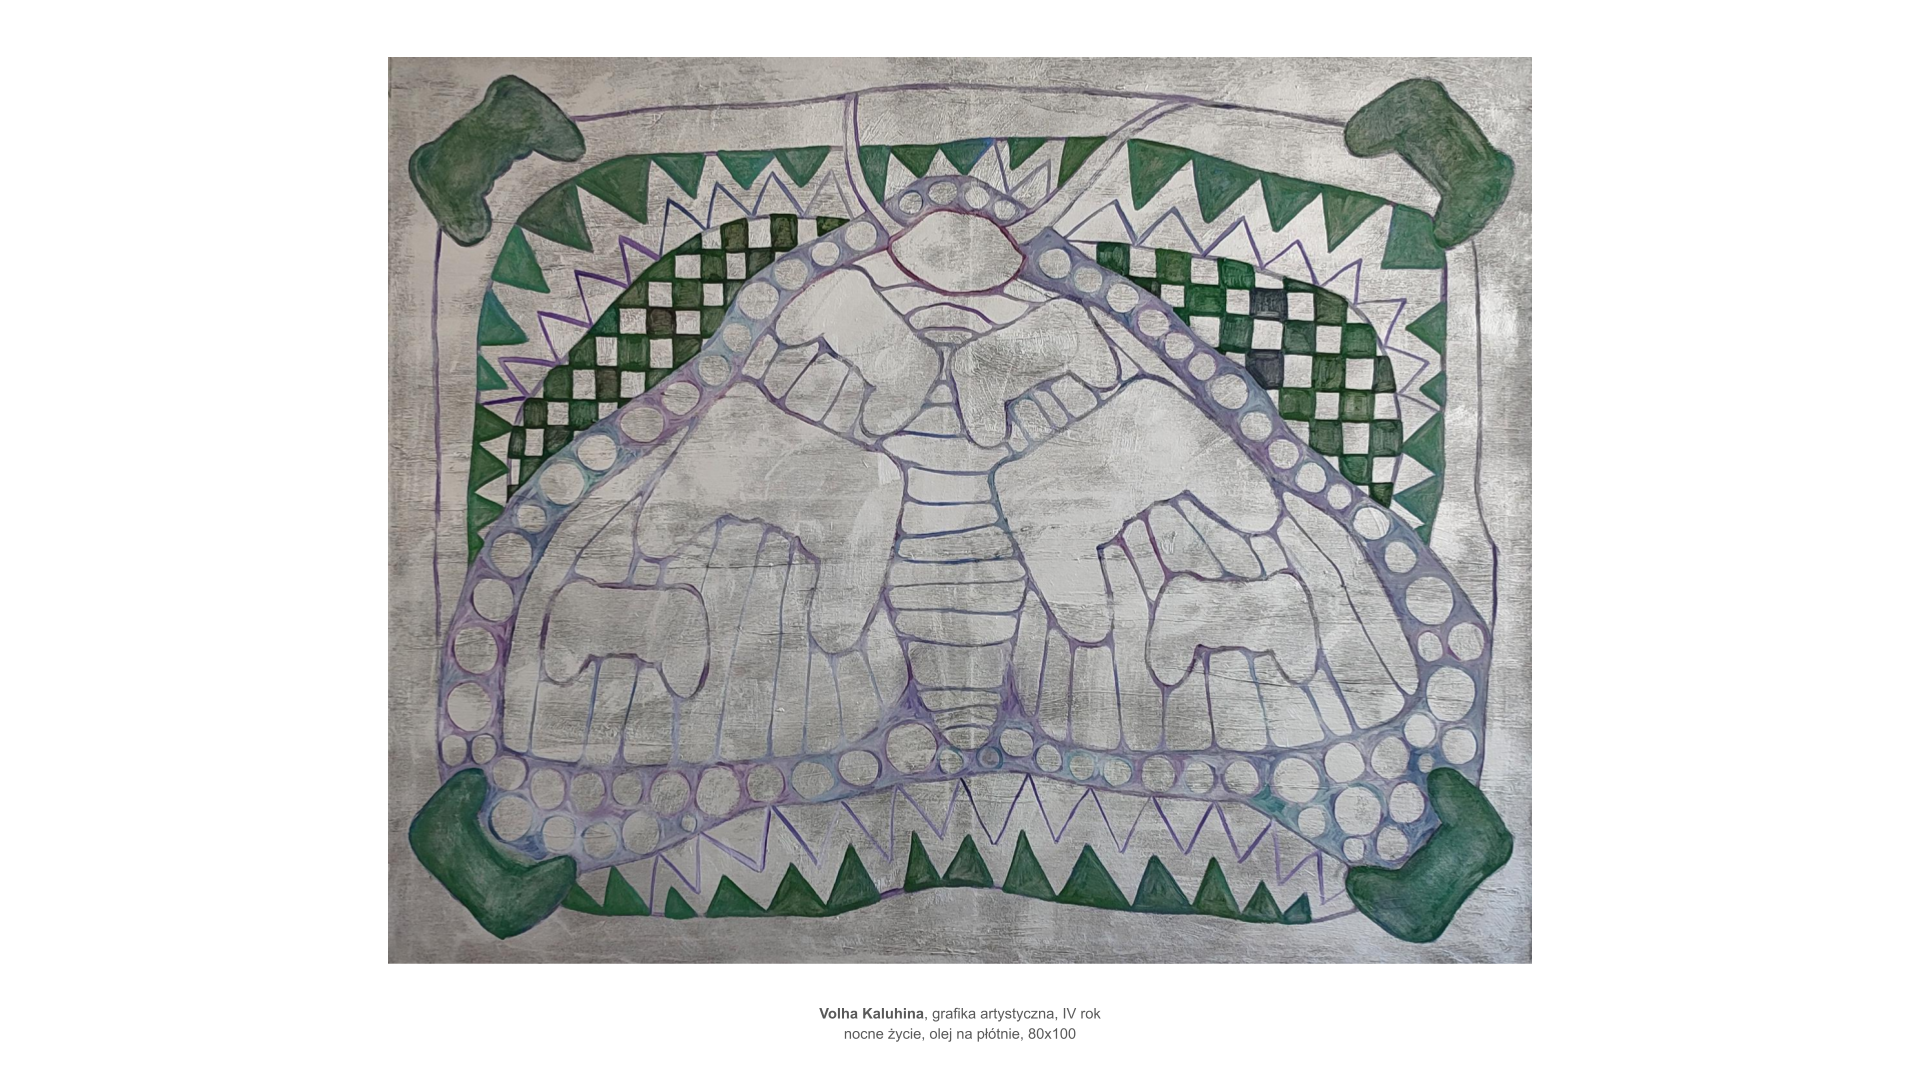 Volha Kaluhina, grafika artystyczna, IV rok. Obraz olejny na płótnie 80 na 100, tytuł nocne życie. Na szarym tle zielone wzory, ostre trójkąty, krzywa szachownica, nierówne koła, sugerują kształt owada, może ćmy.